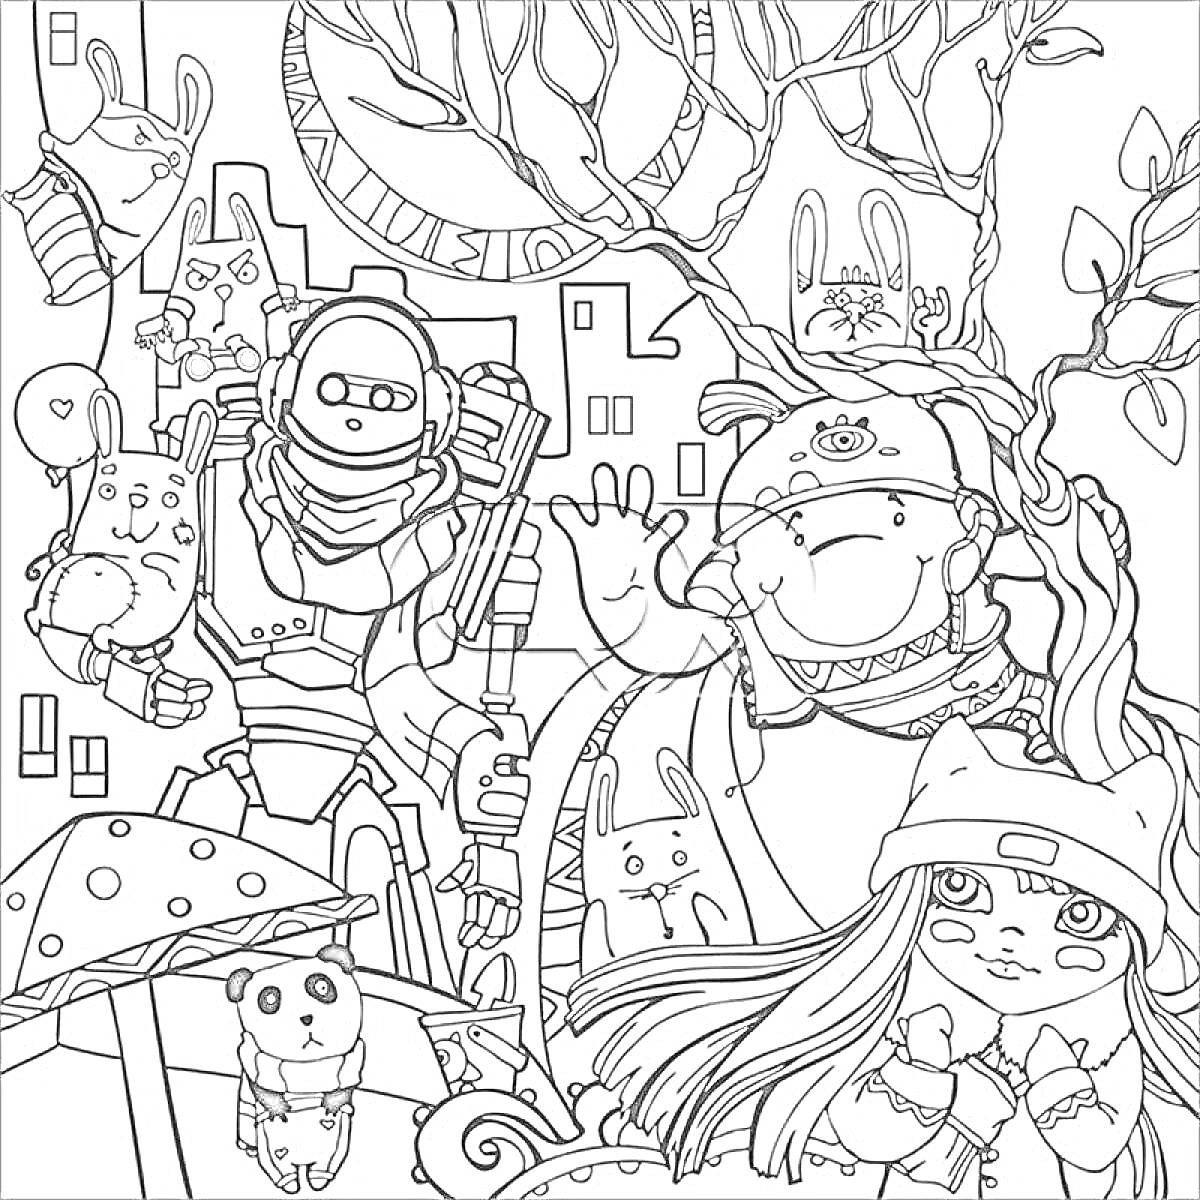 Раскраска Робот, мужчина с бородой, девочка в шапке с ушками, грибы, панда, кролики